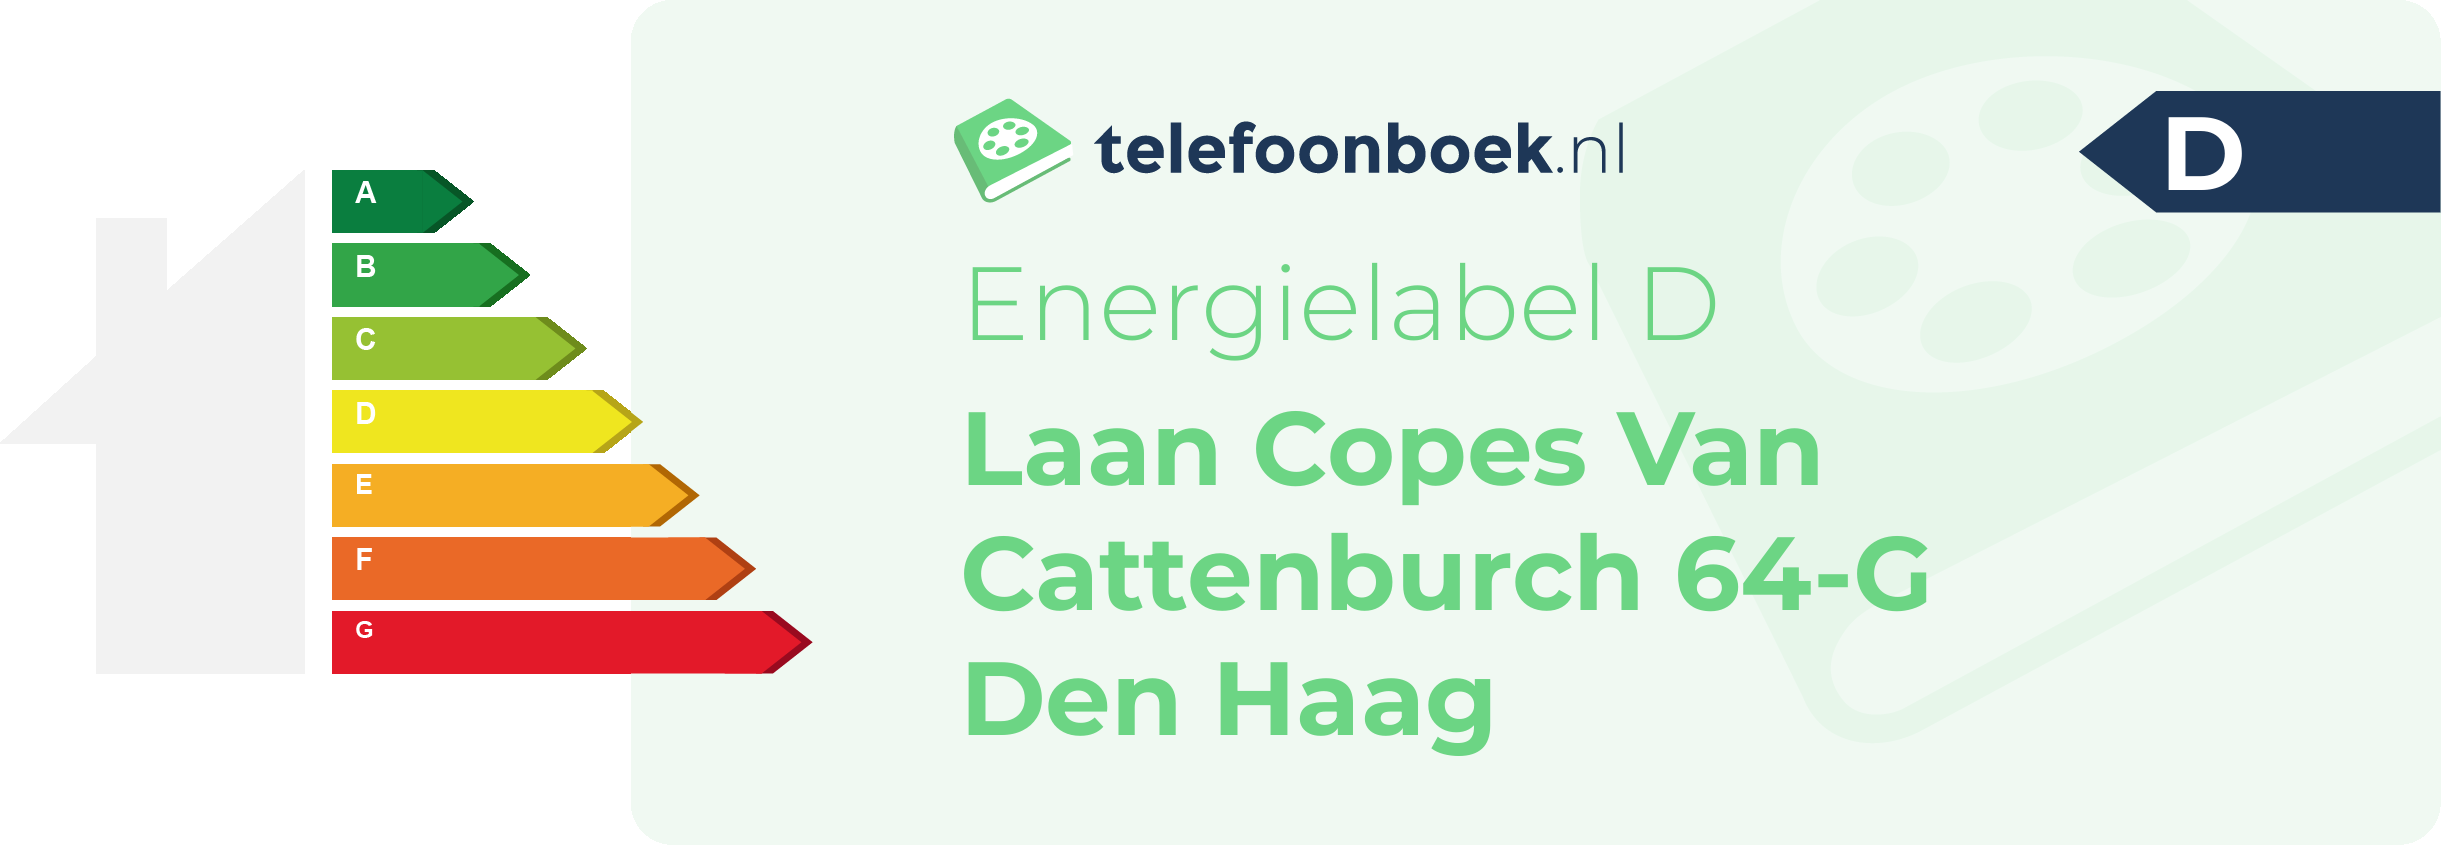 Energielabel Laan Copes Van Cattenburch 64-G Den Haag